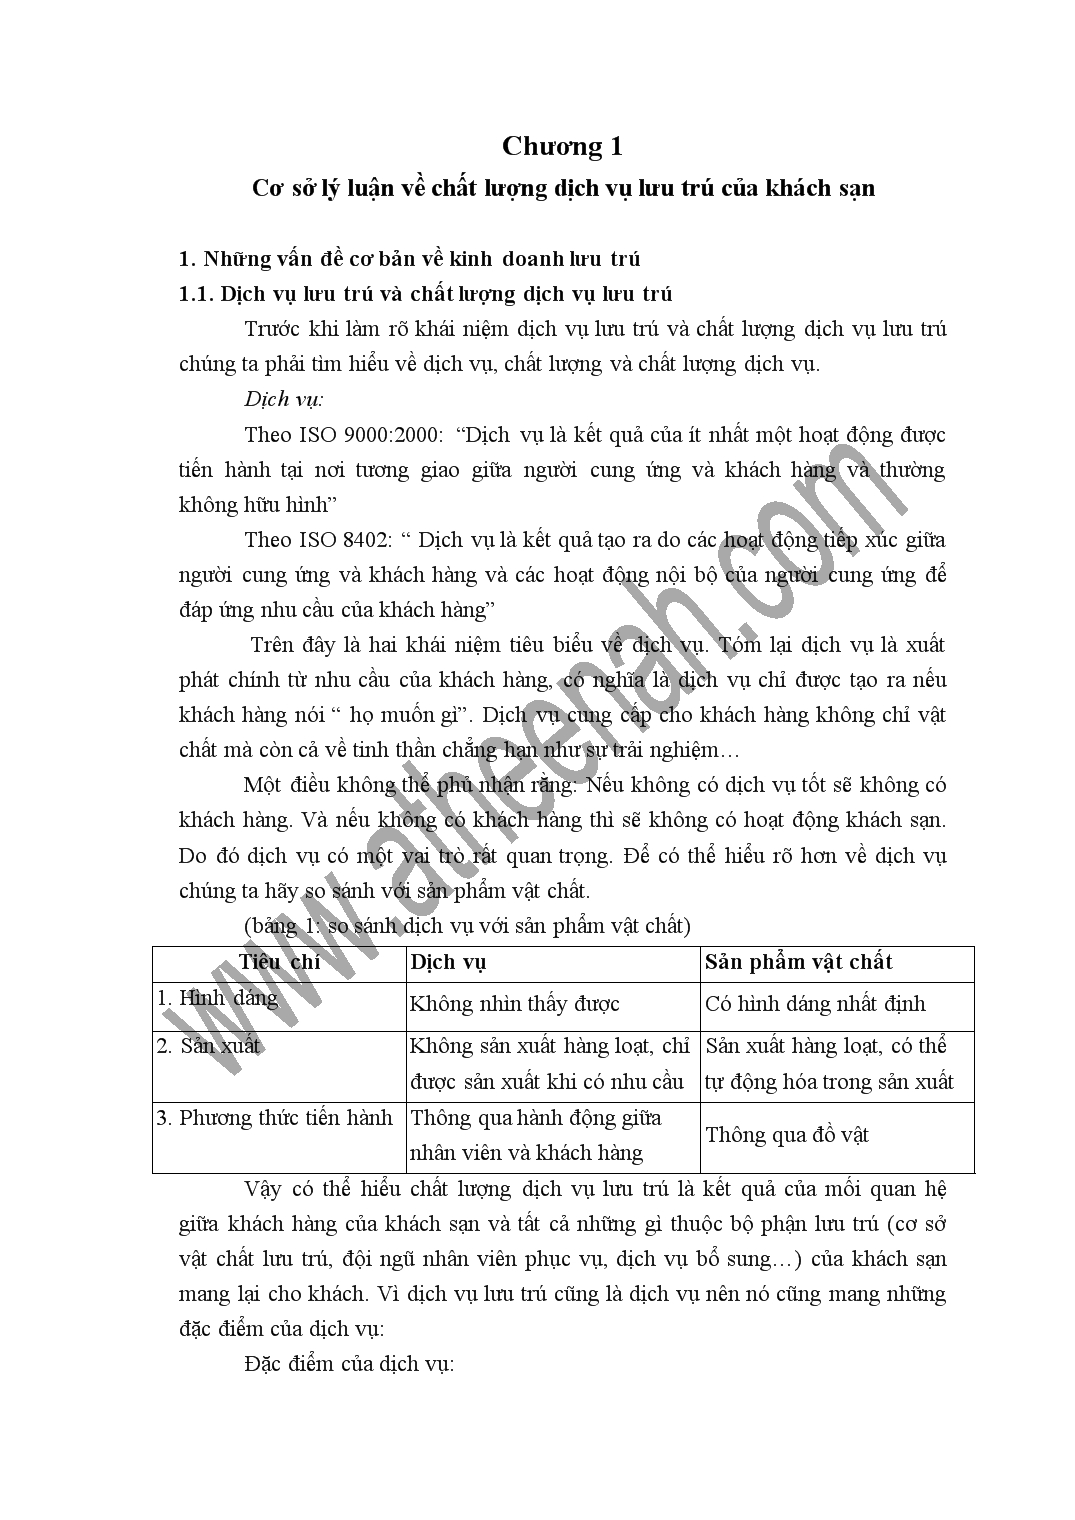 Chuyên đề Chất lượng dịch vu lưu trú tại khách sạn công đoàn Hà Nội trang 4